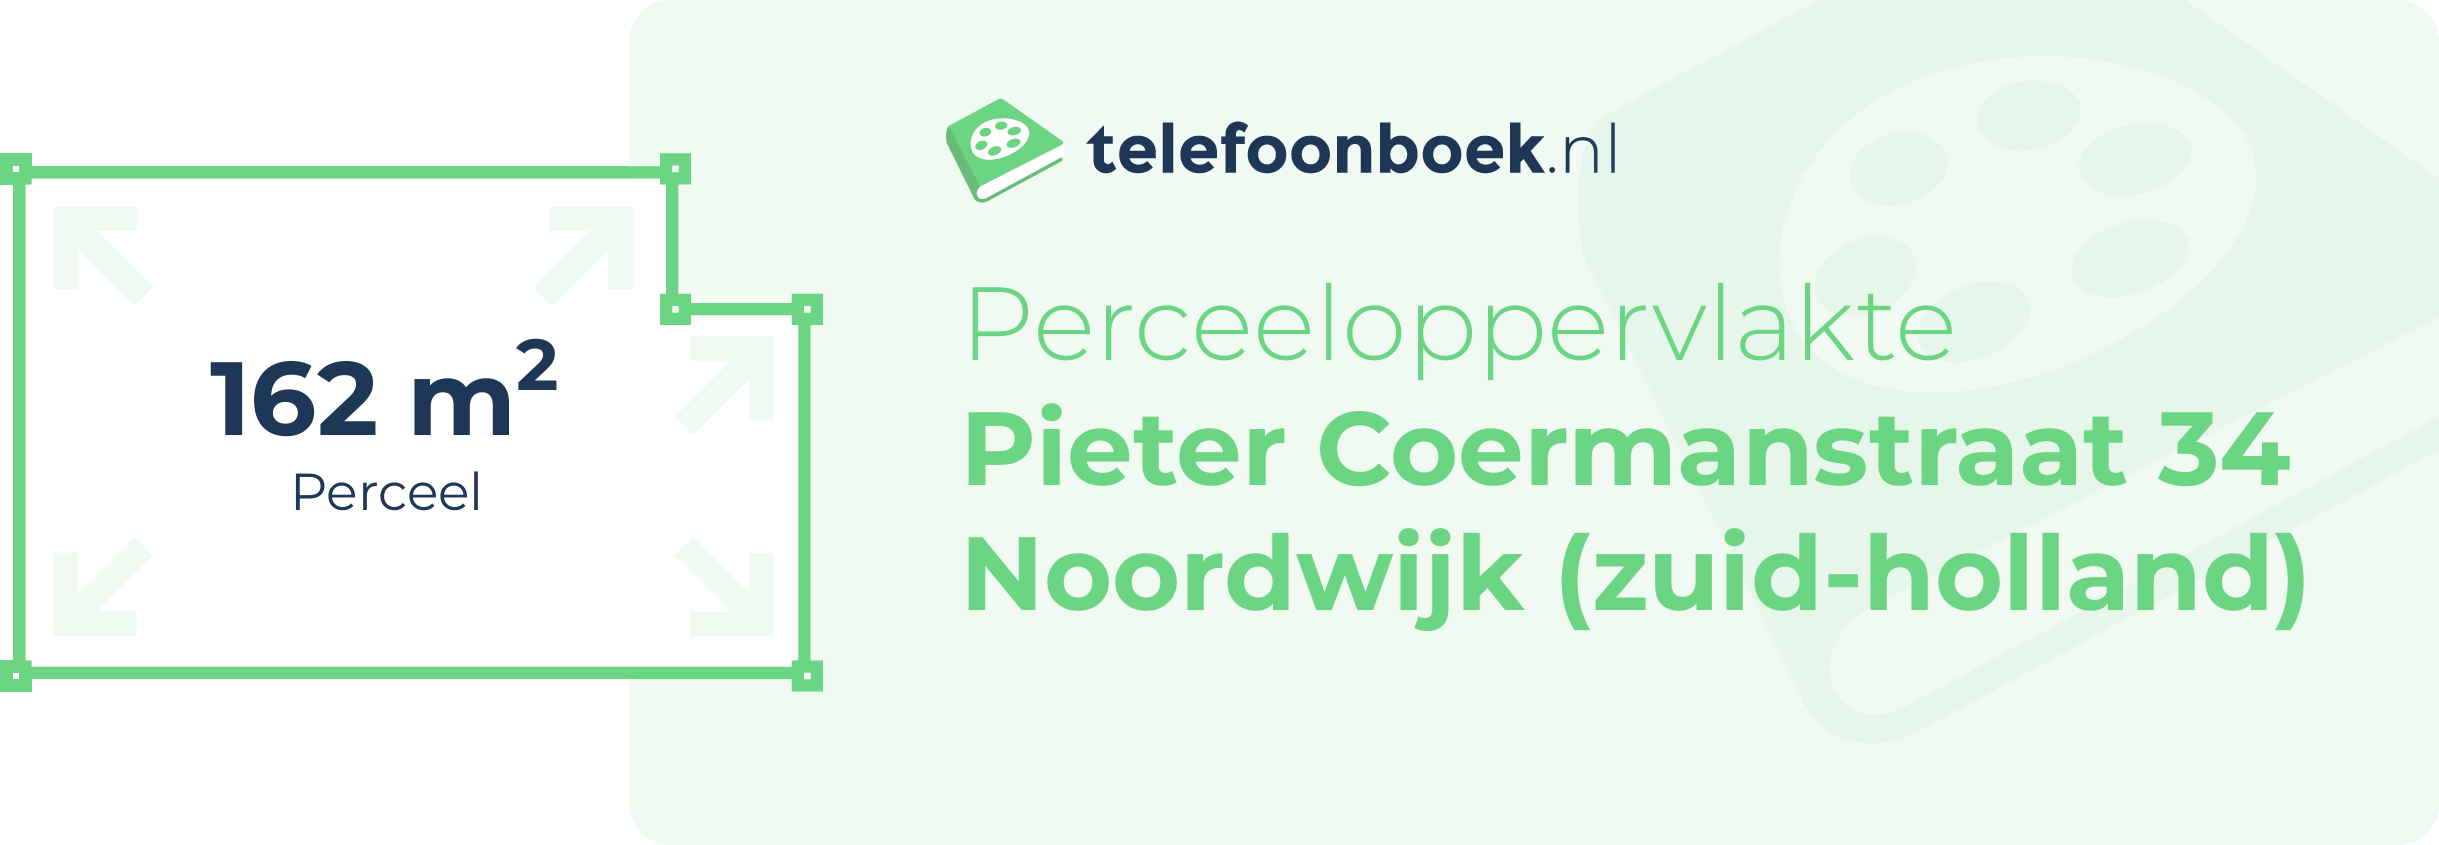 Perceeloppervlakte Pieter Coermanstraat 34 Noordwijk (Zuid-Holland)